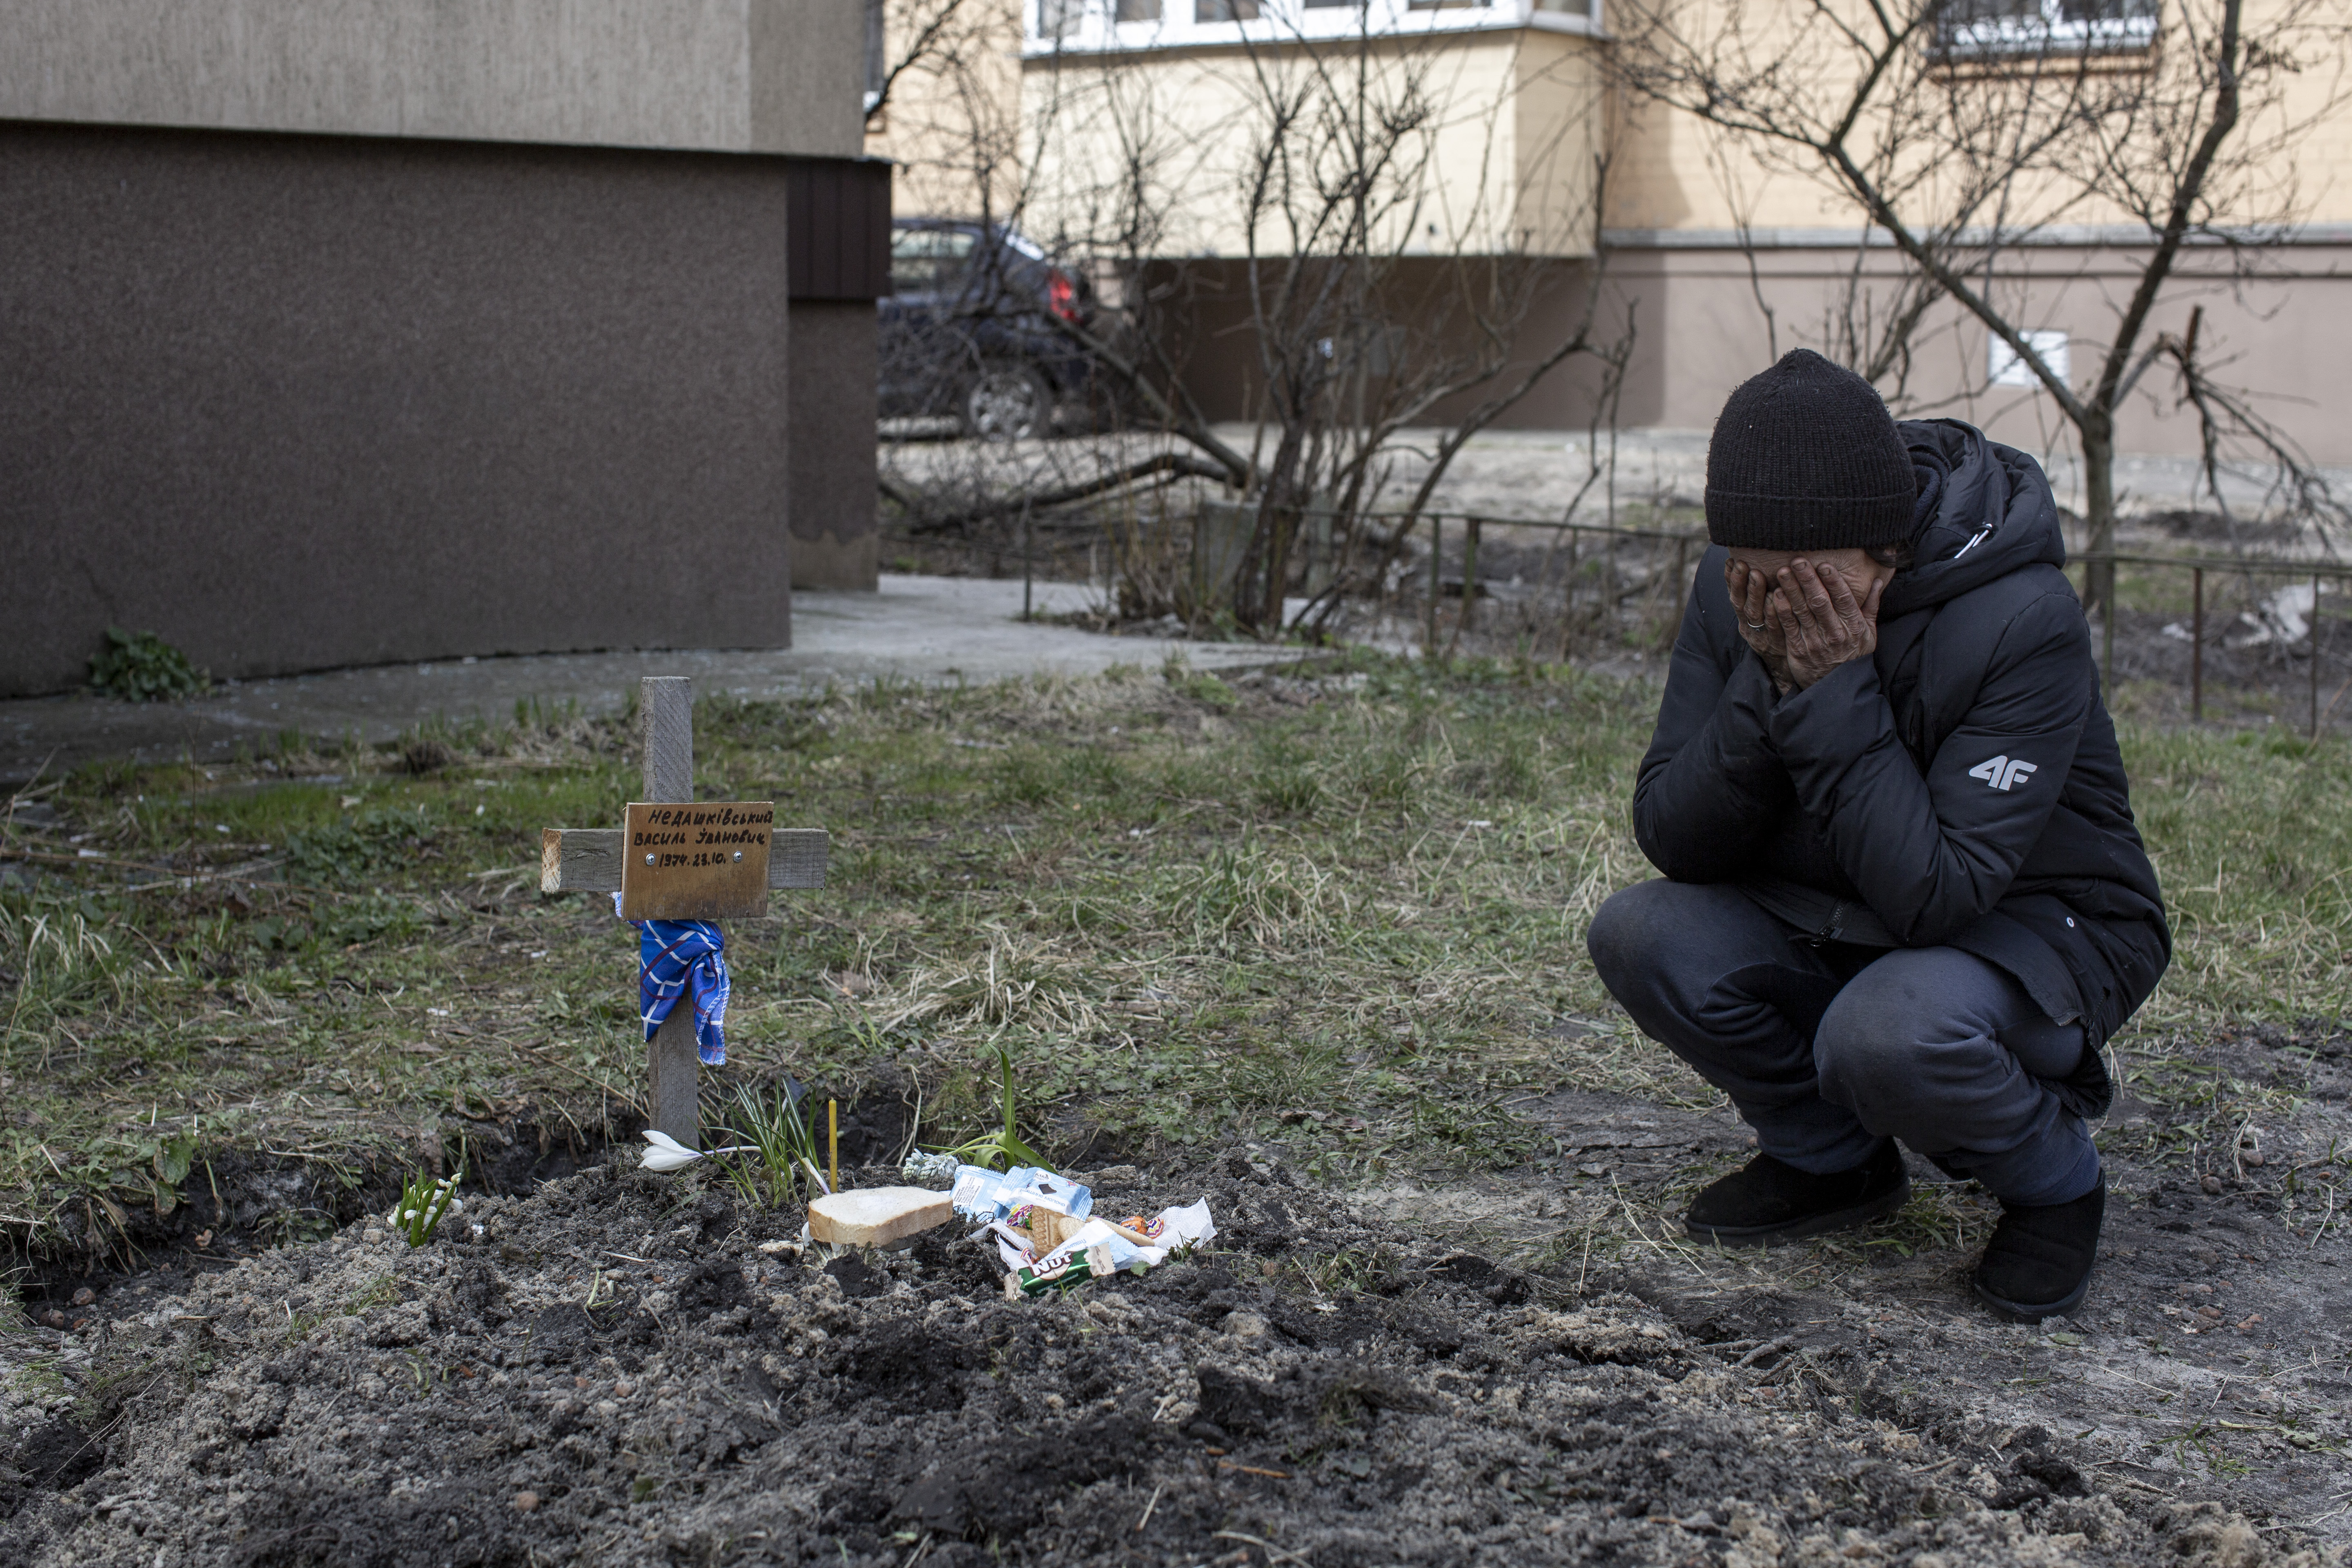 Bucsában, Borodjankában halottak százai mutatják, mit ért Oroszország Ukrajna nácitlanítása alatt